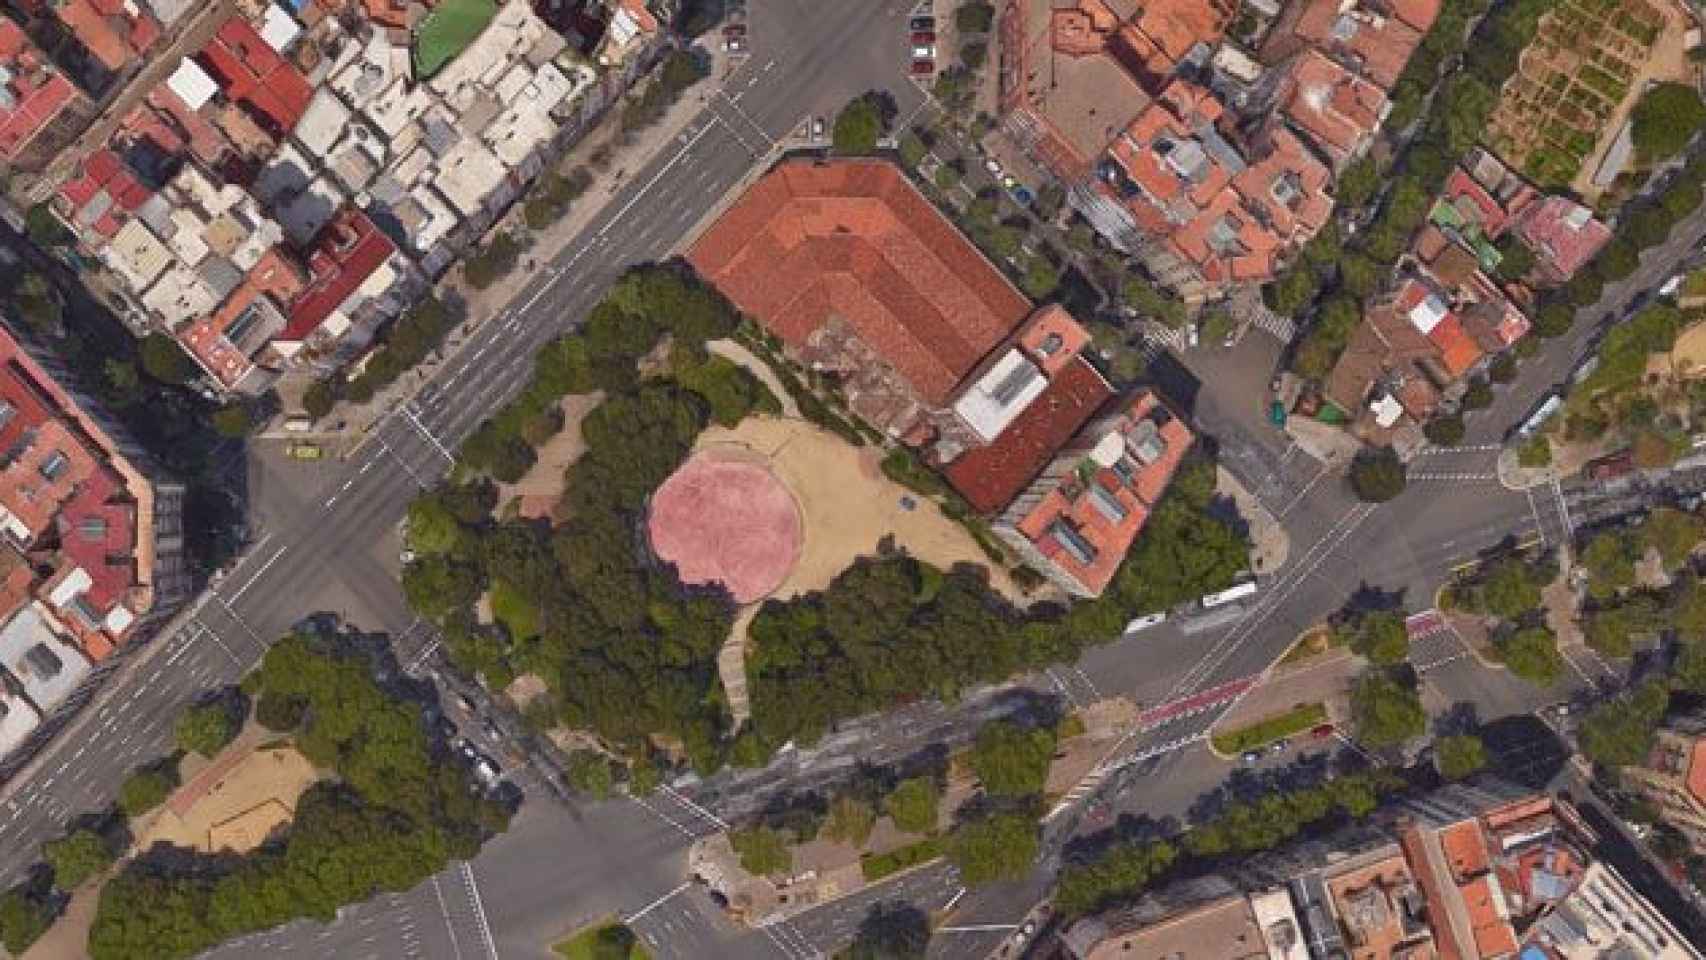 La nueva plaza Pablo Neruda, antigua plaza de la Hispanidad, situada en la esquina de las calles Lepant y Aragó de Barcelona / CG